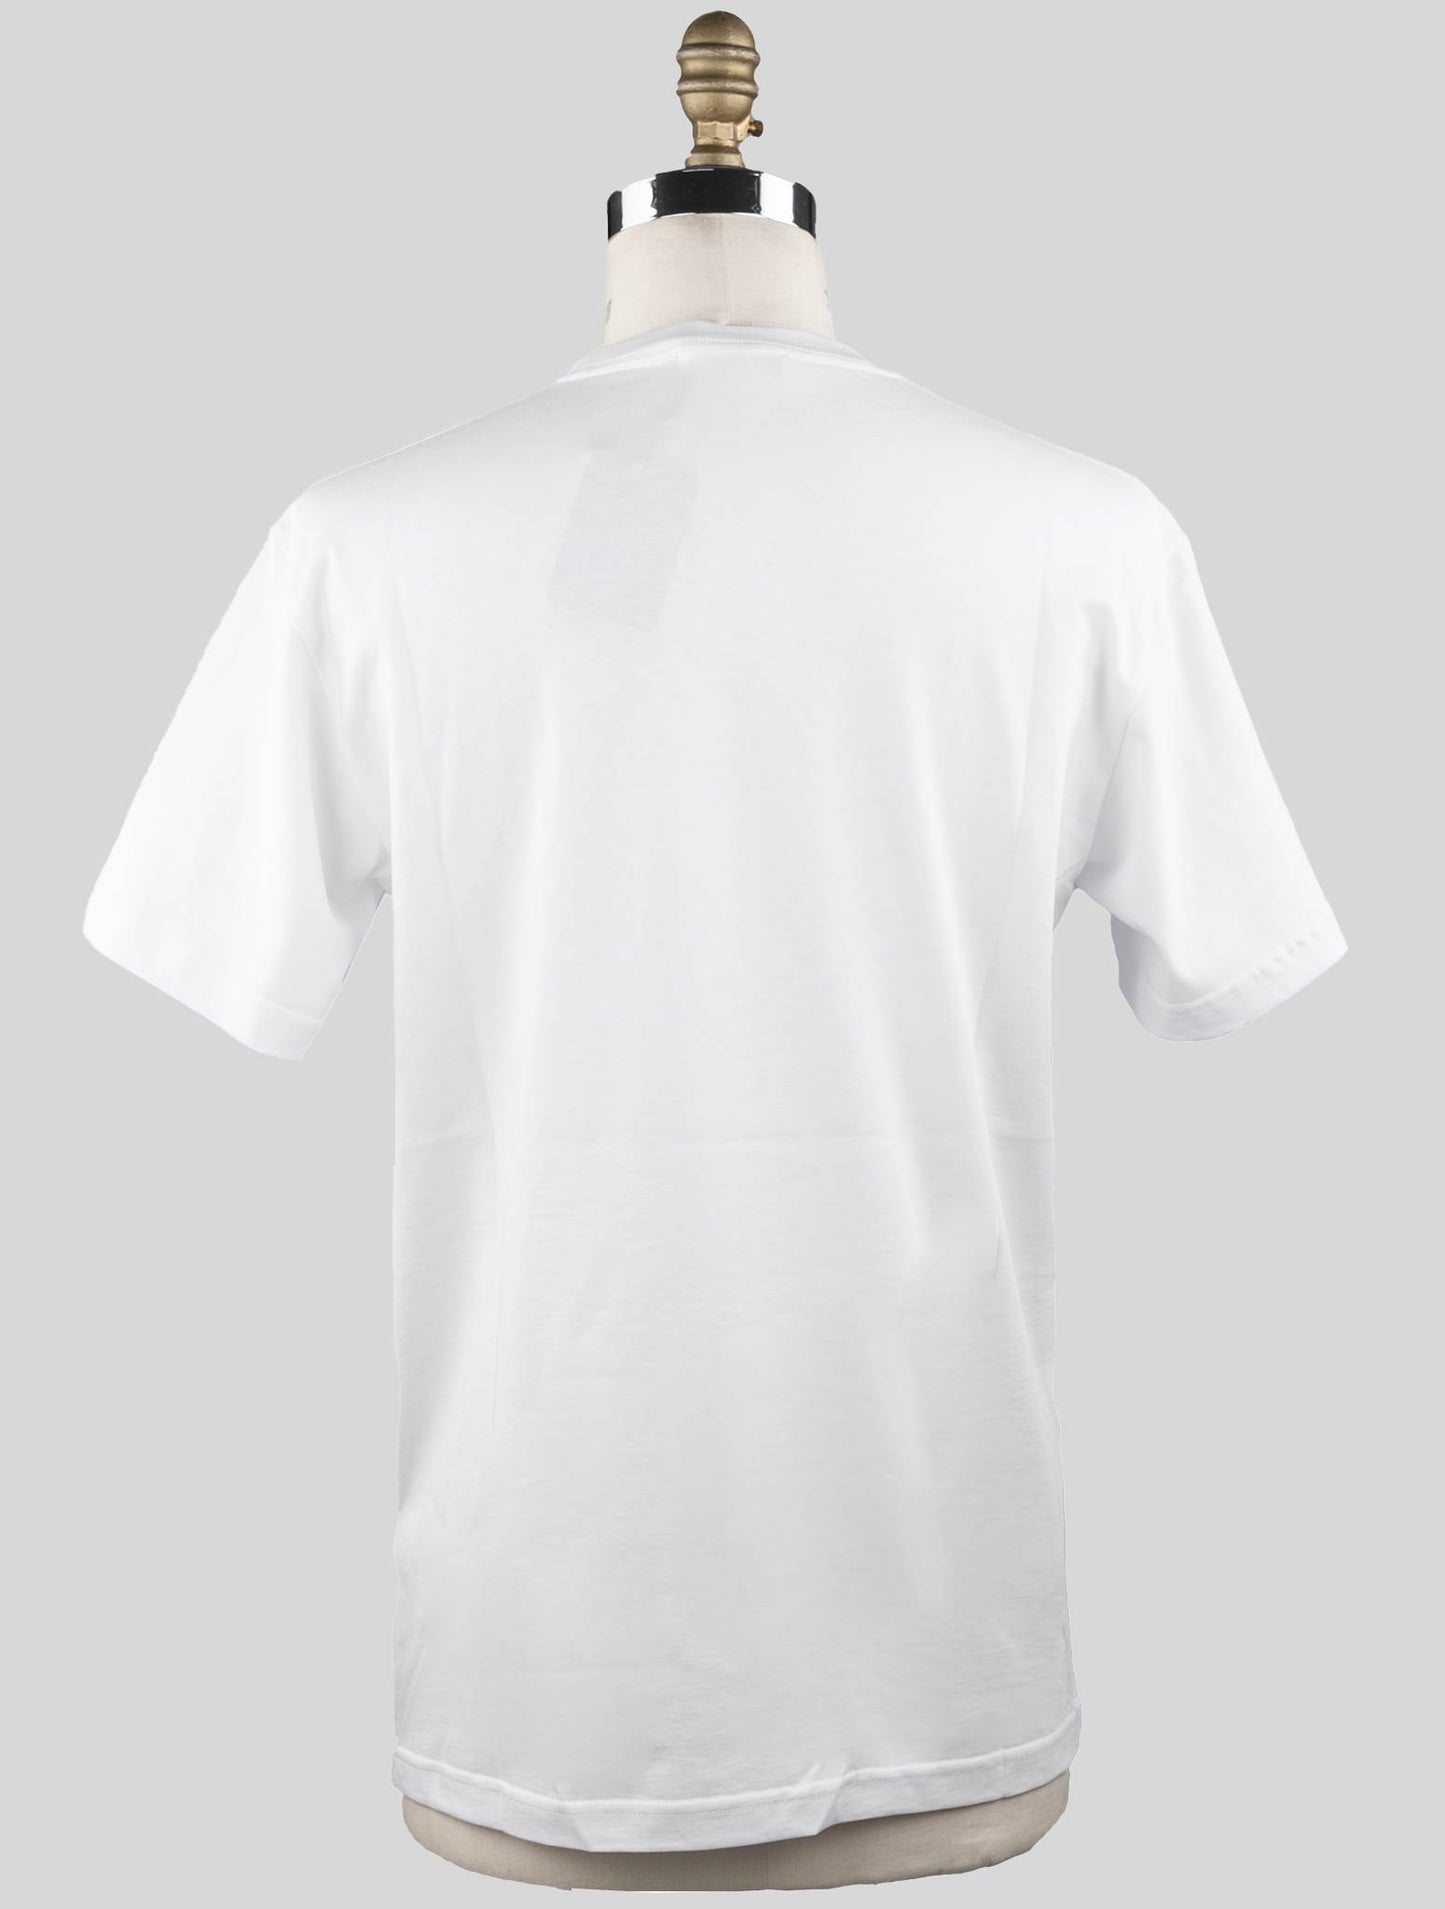 Knt kiton bílá bavlněná tričko